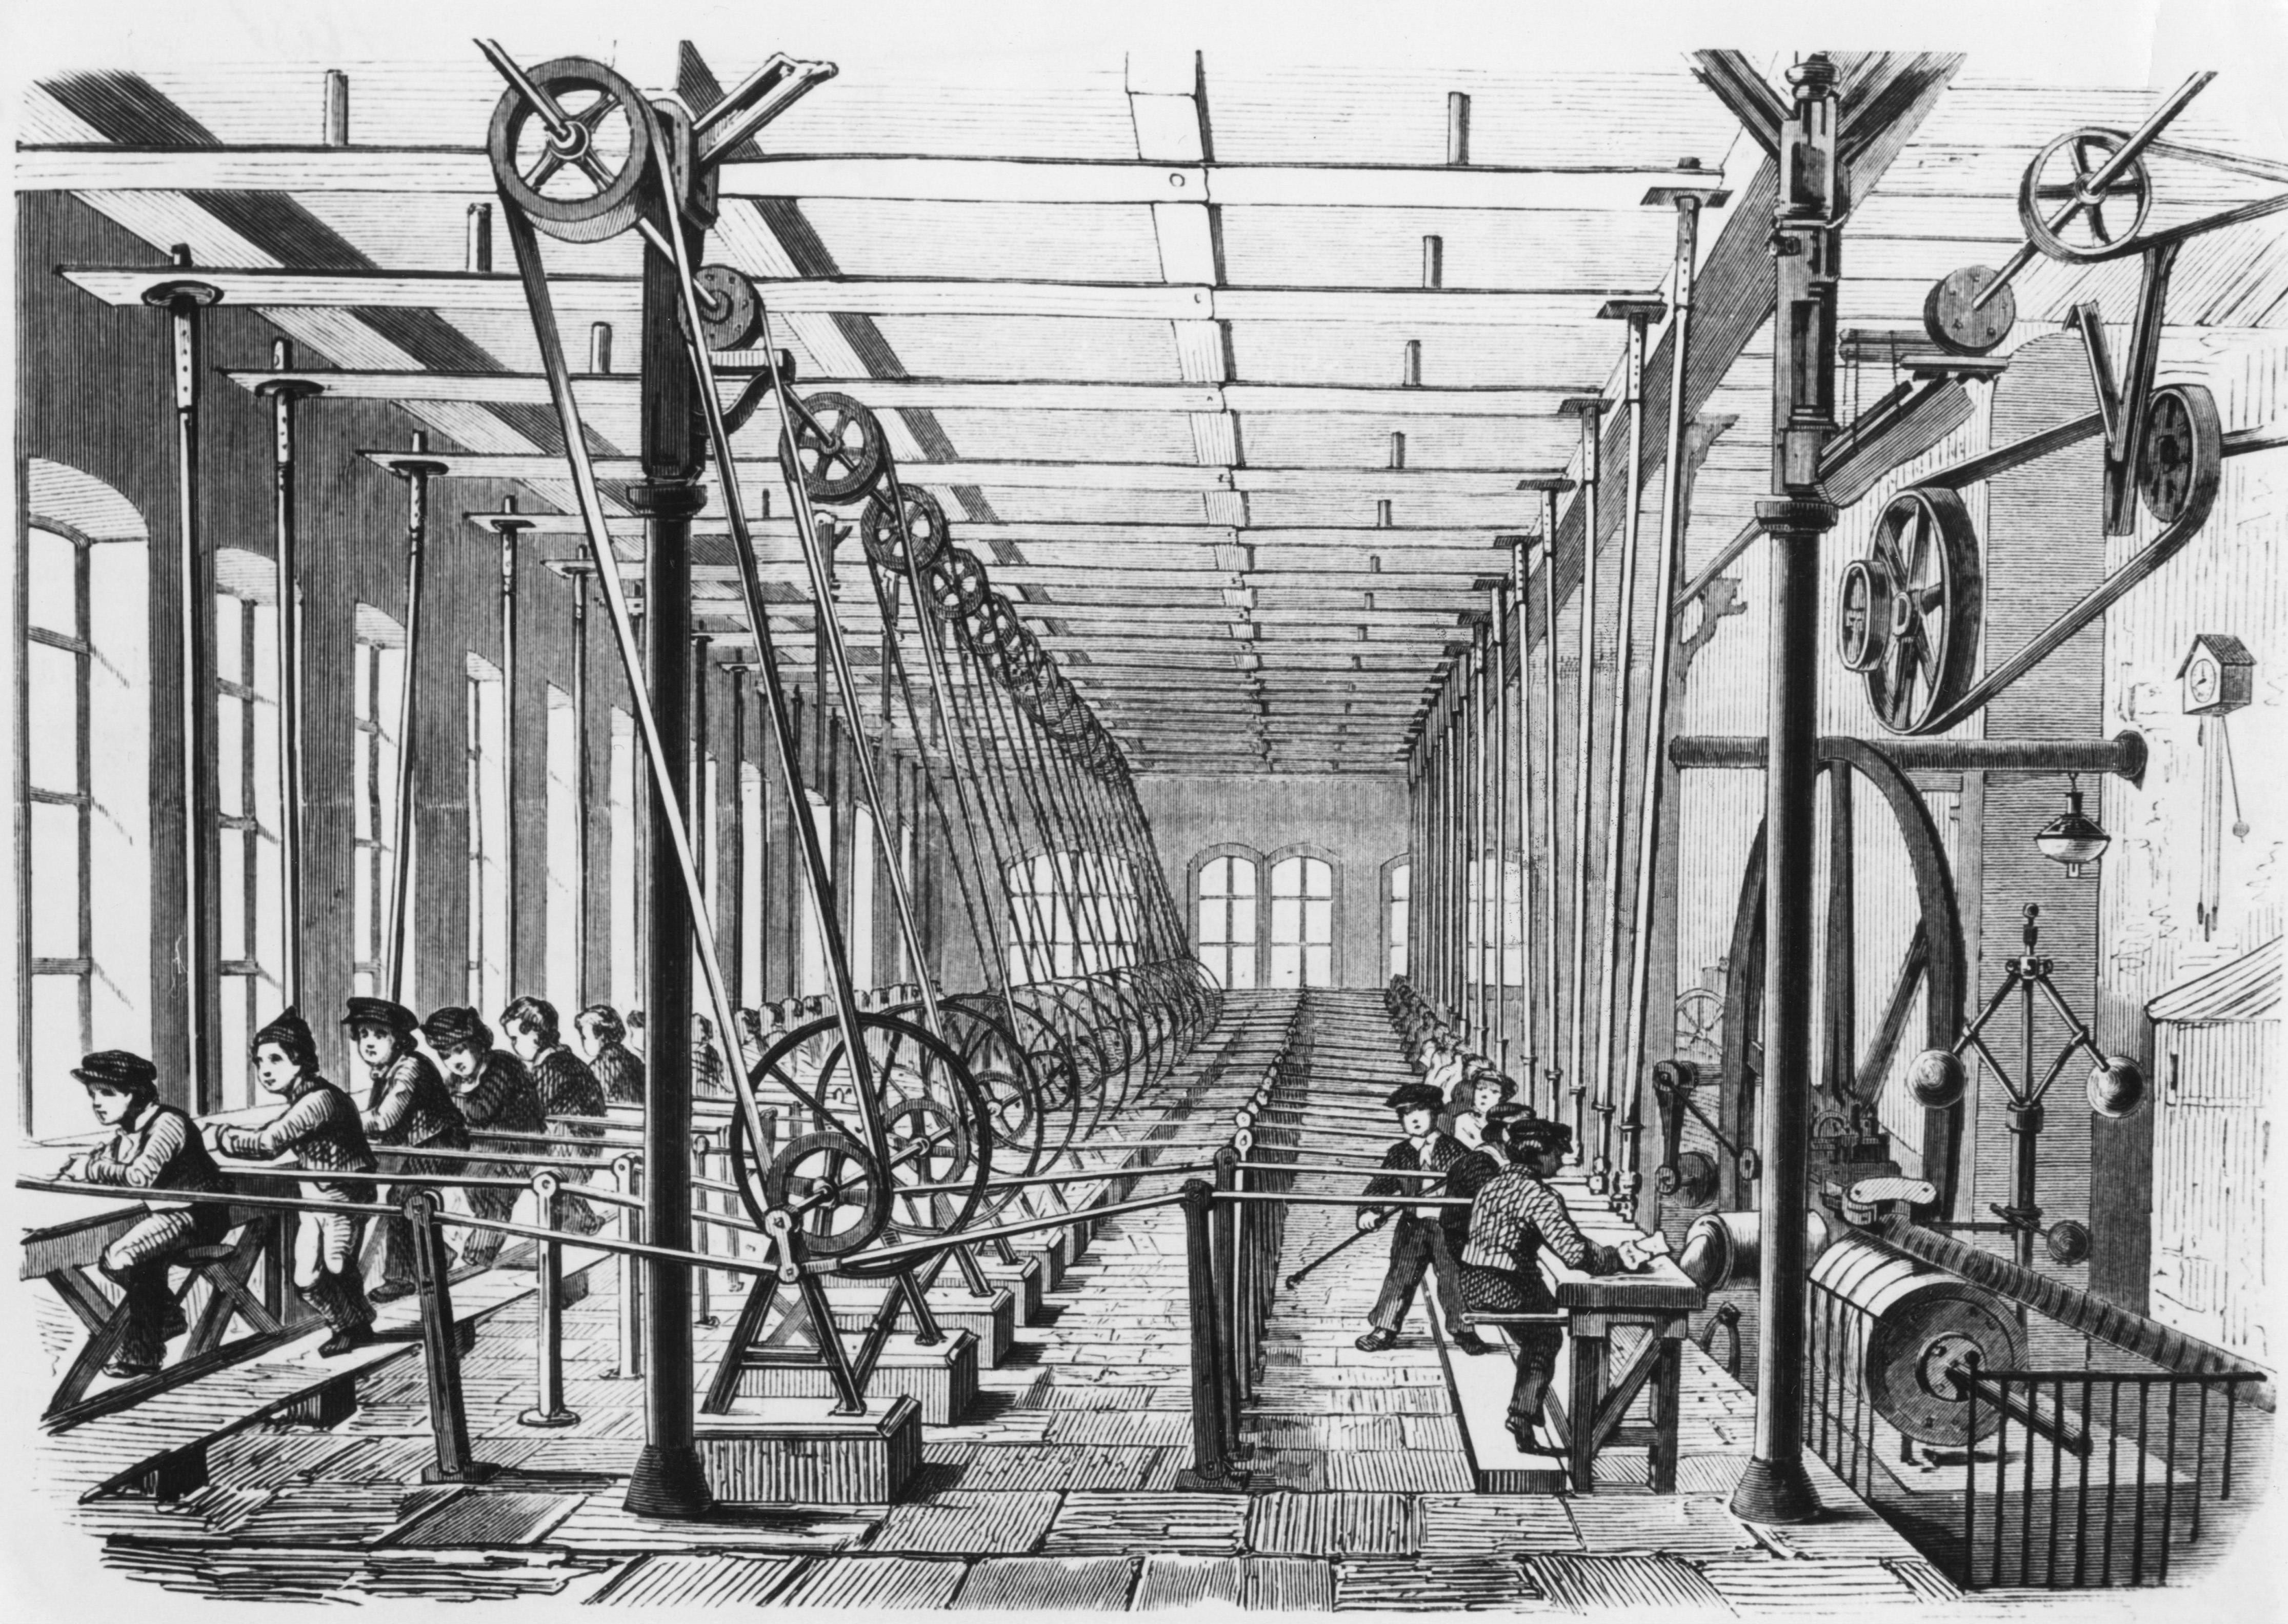 Industrial century. Промышленная революция в Англии 19 век. Ткацкий фабрики в Англии 18 века. Промышленная революция 18.век Англия. Промышленная революция (1760-1840.